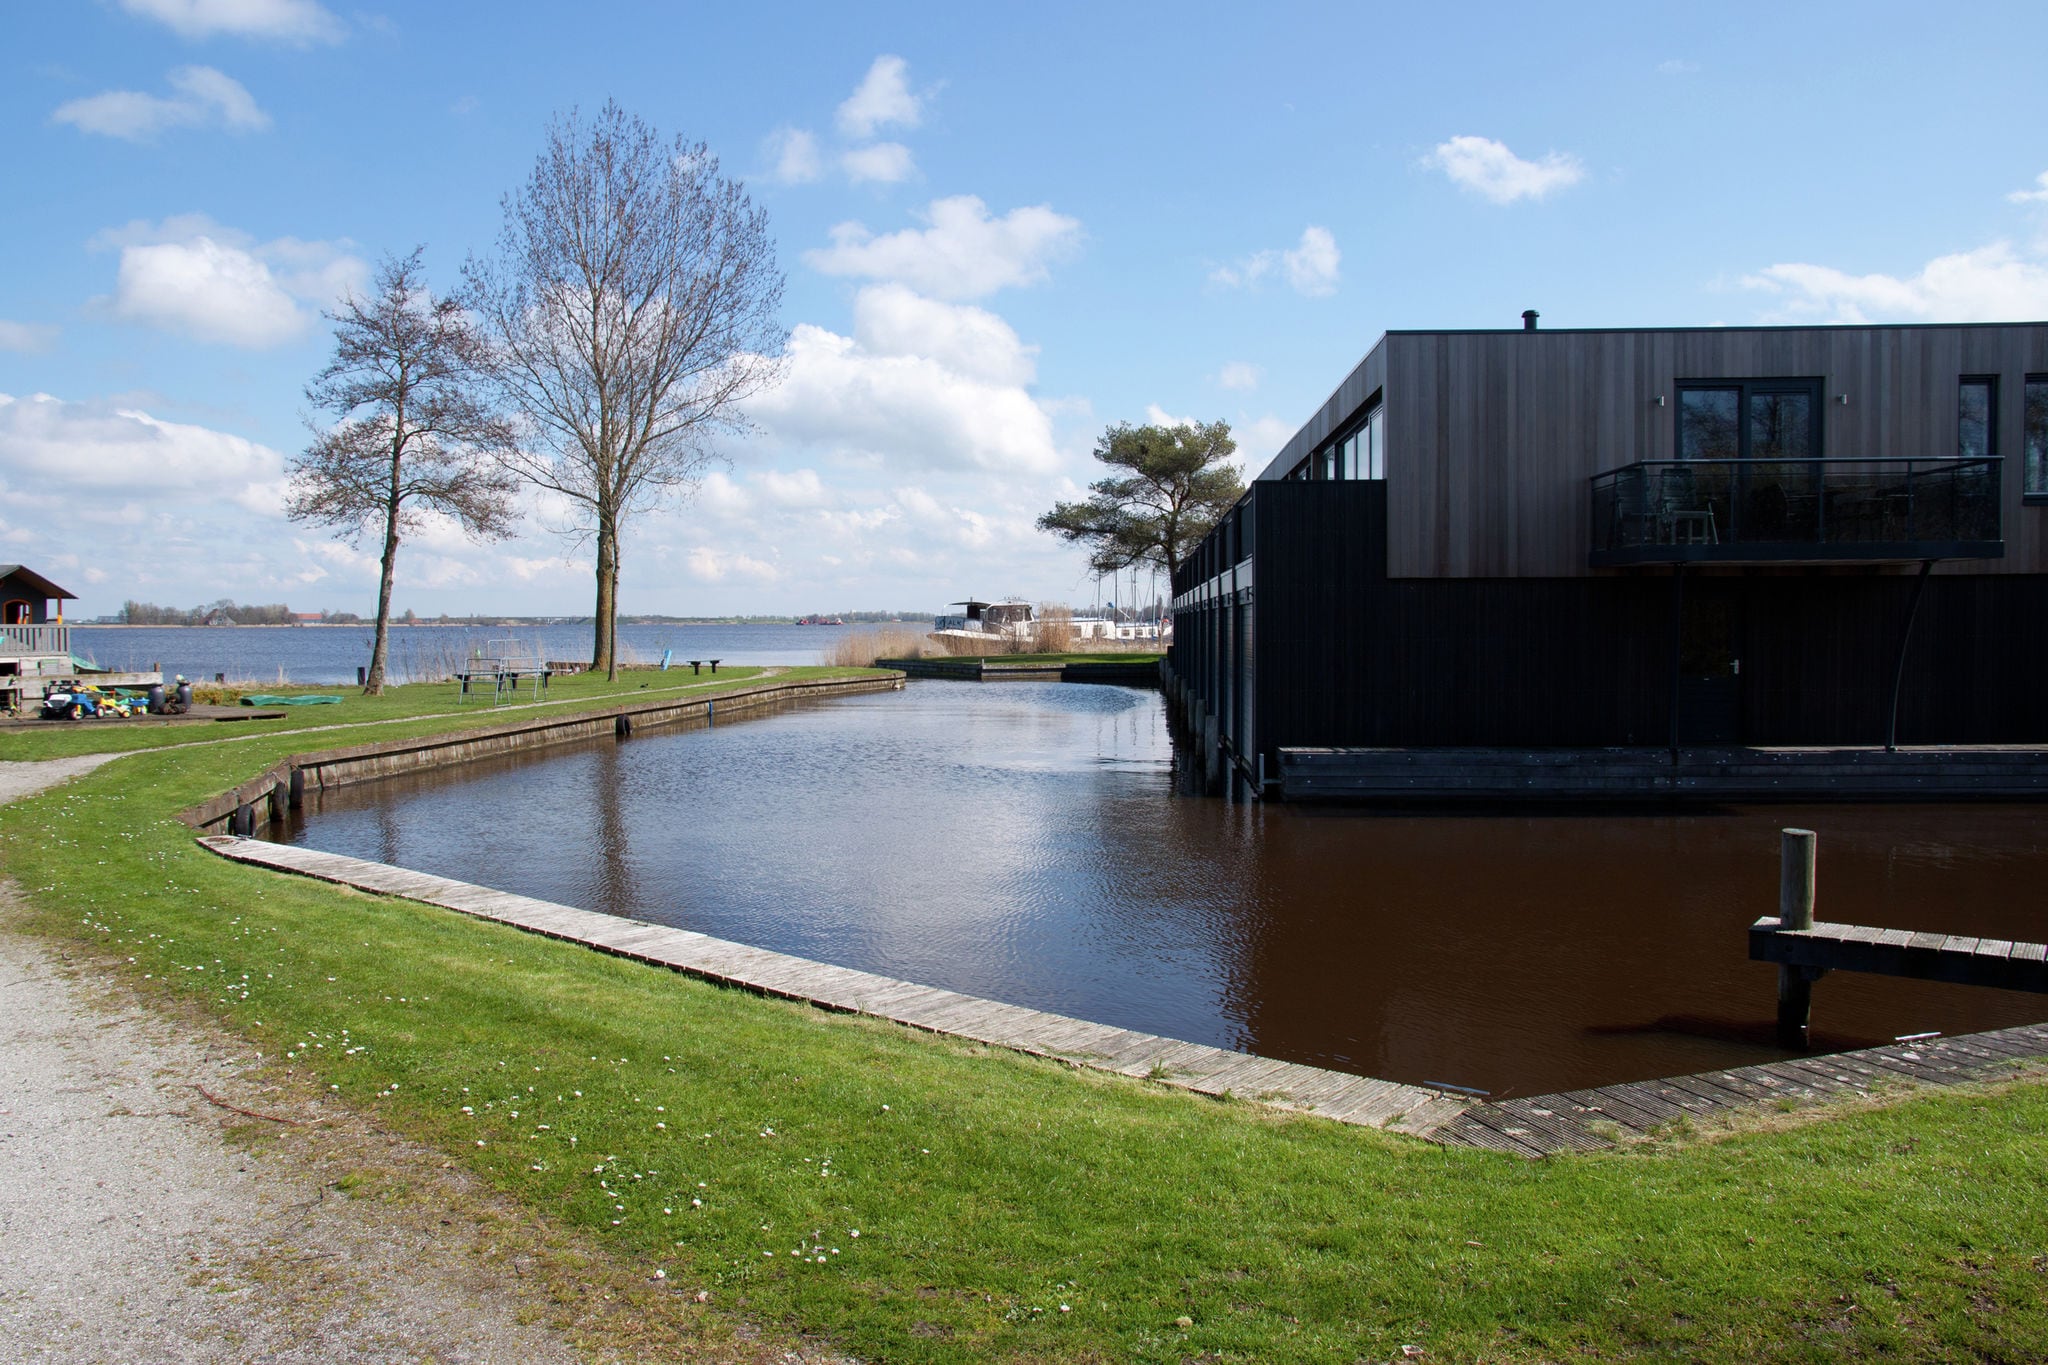 Knus appartement aan de Friese meren met een aanlegsteiger